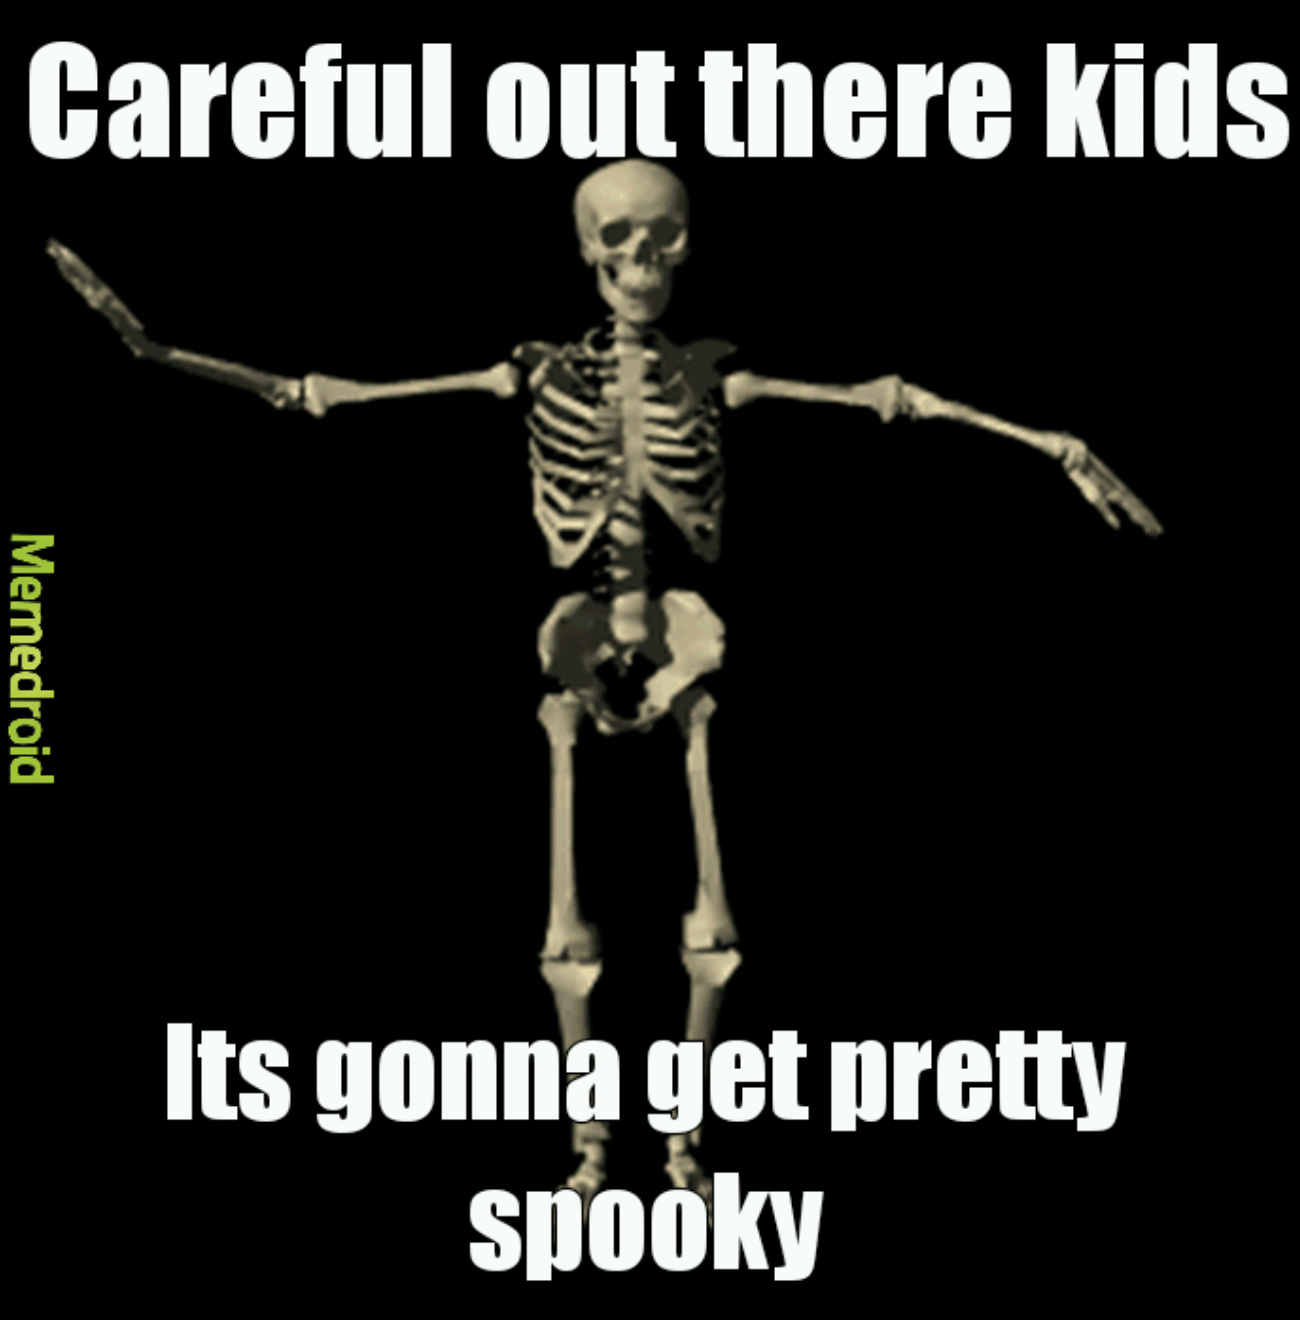 So fuckin spooky - meme